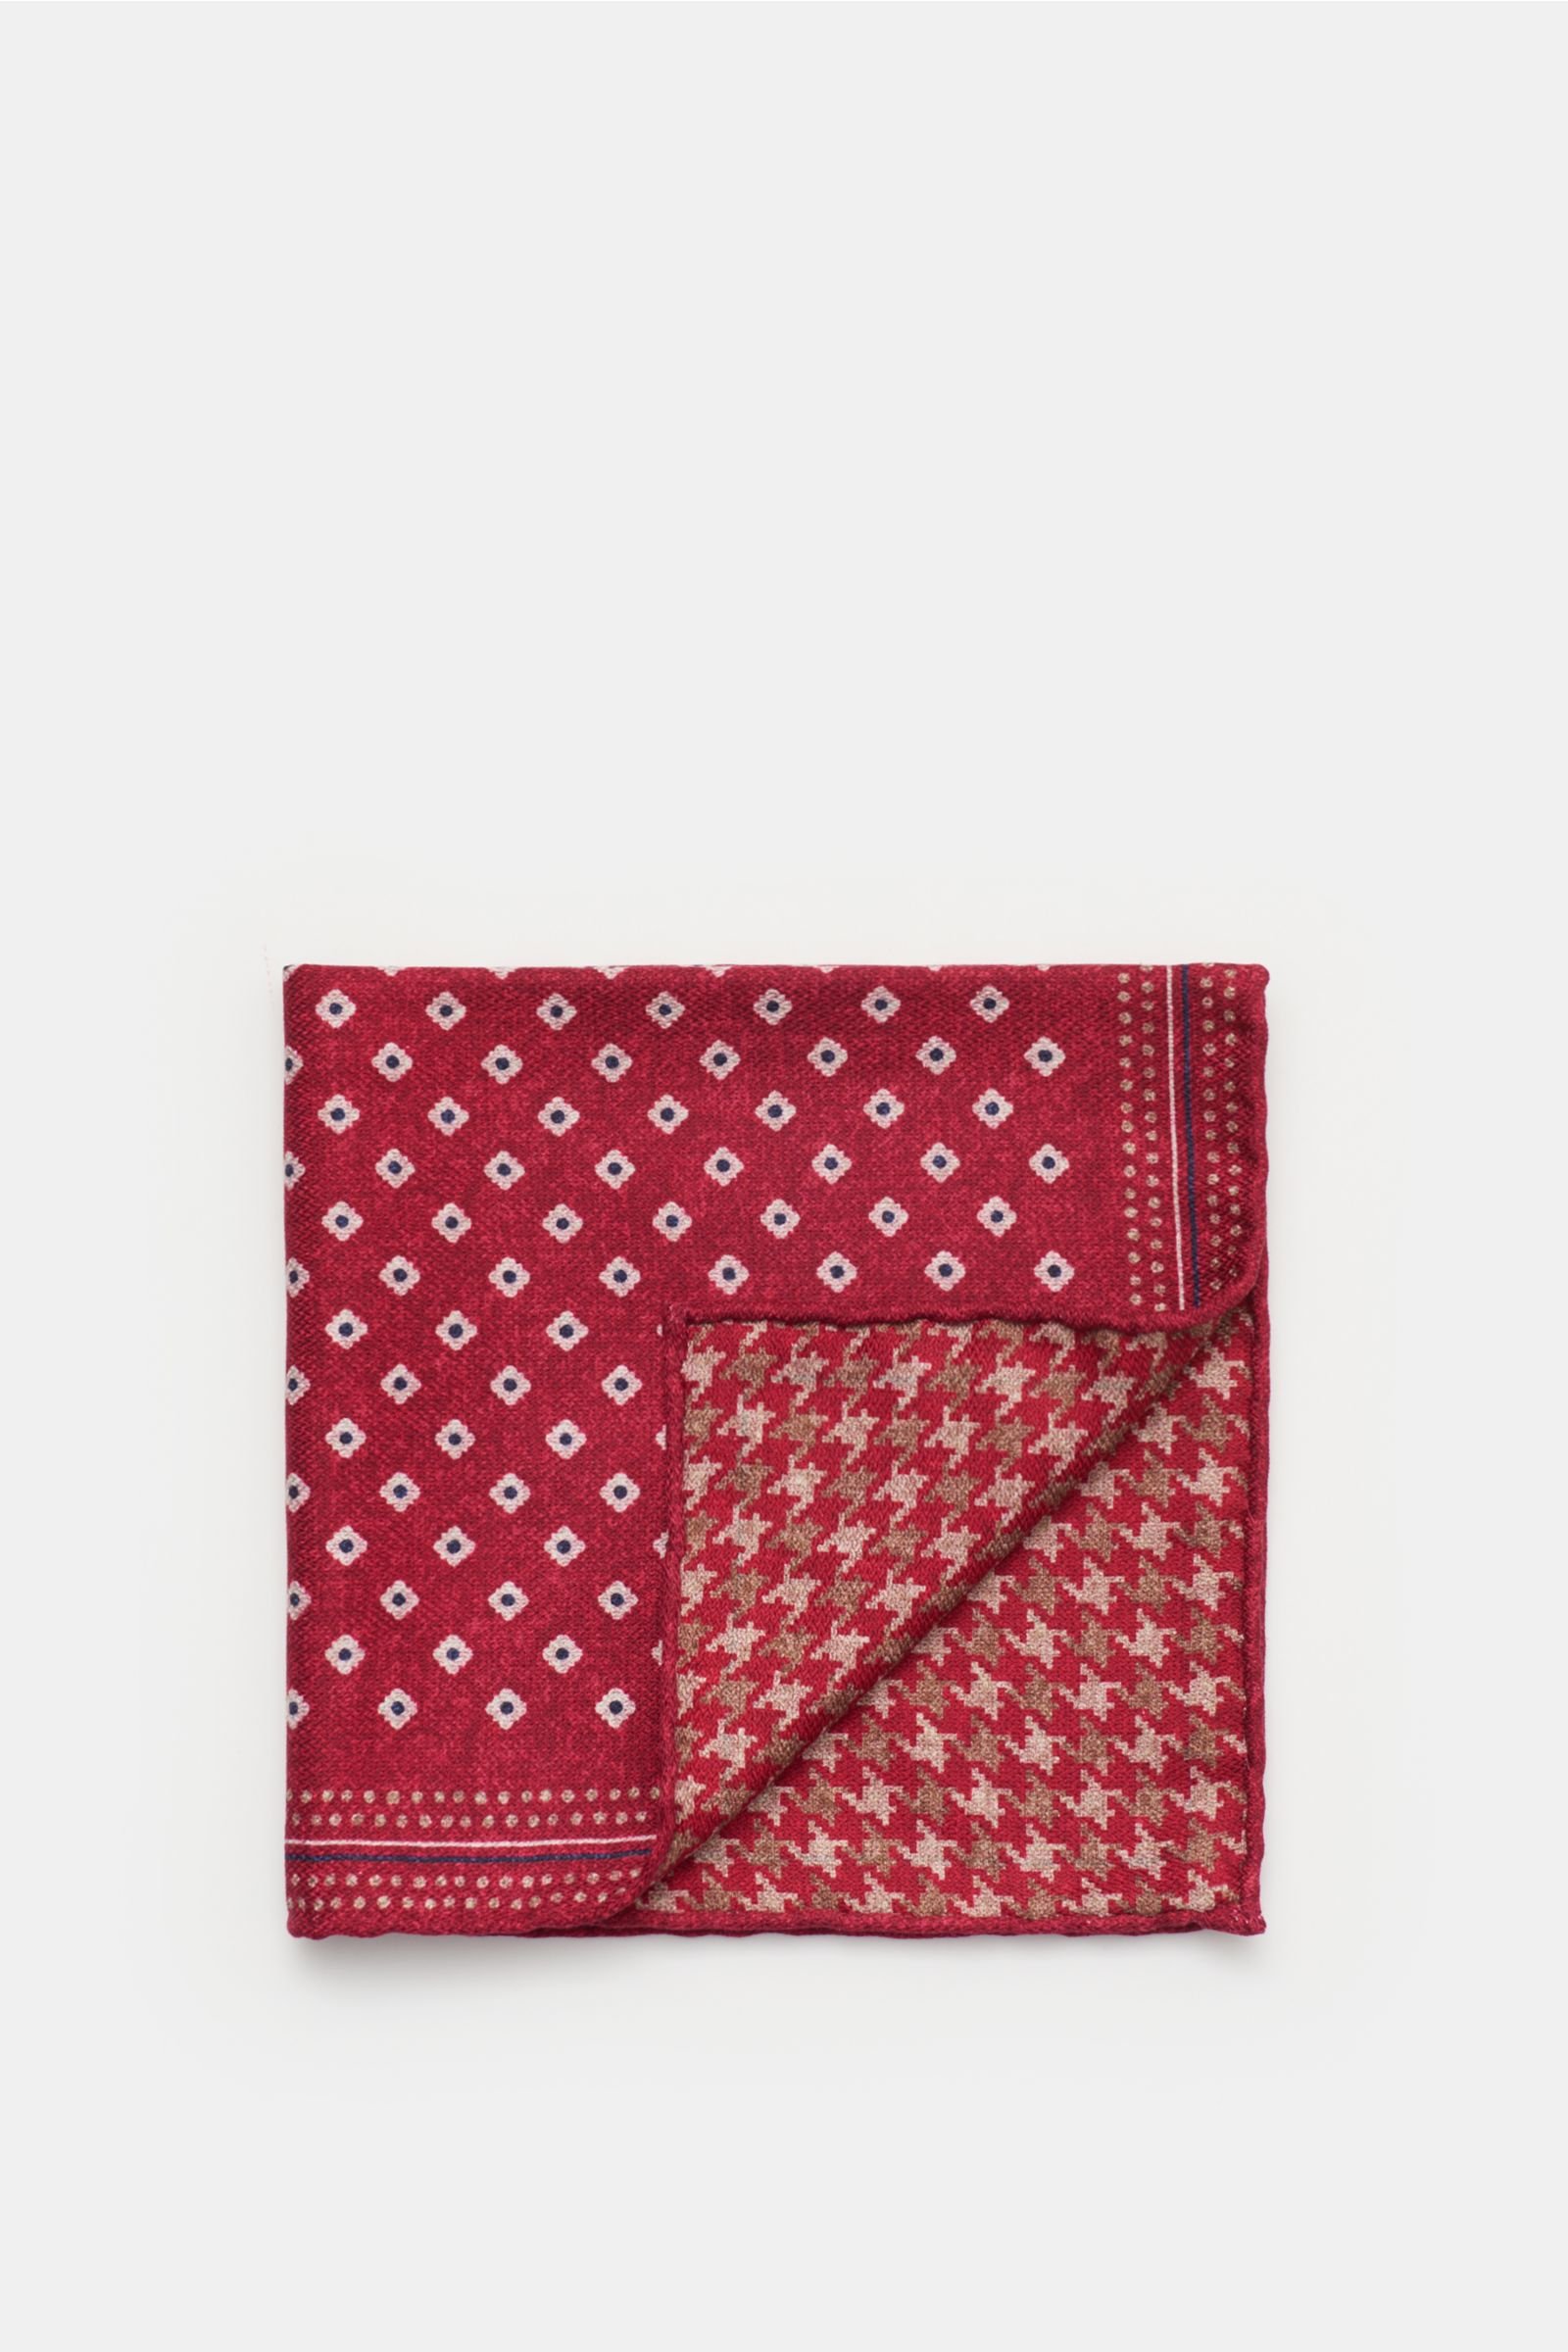 Pocket square burgundy/beige patterned